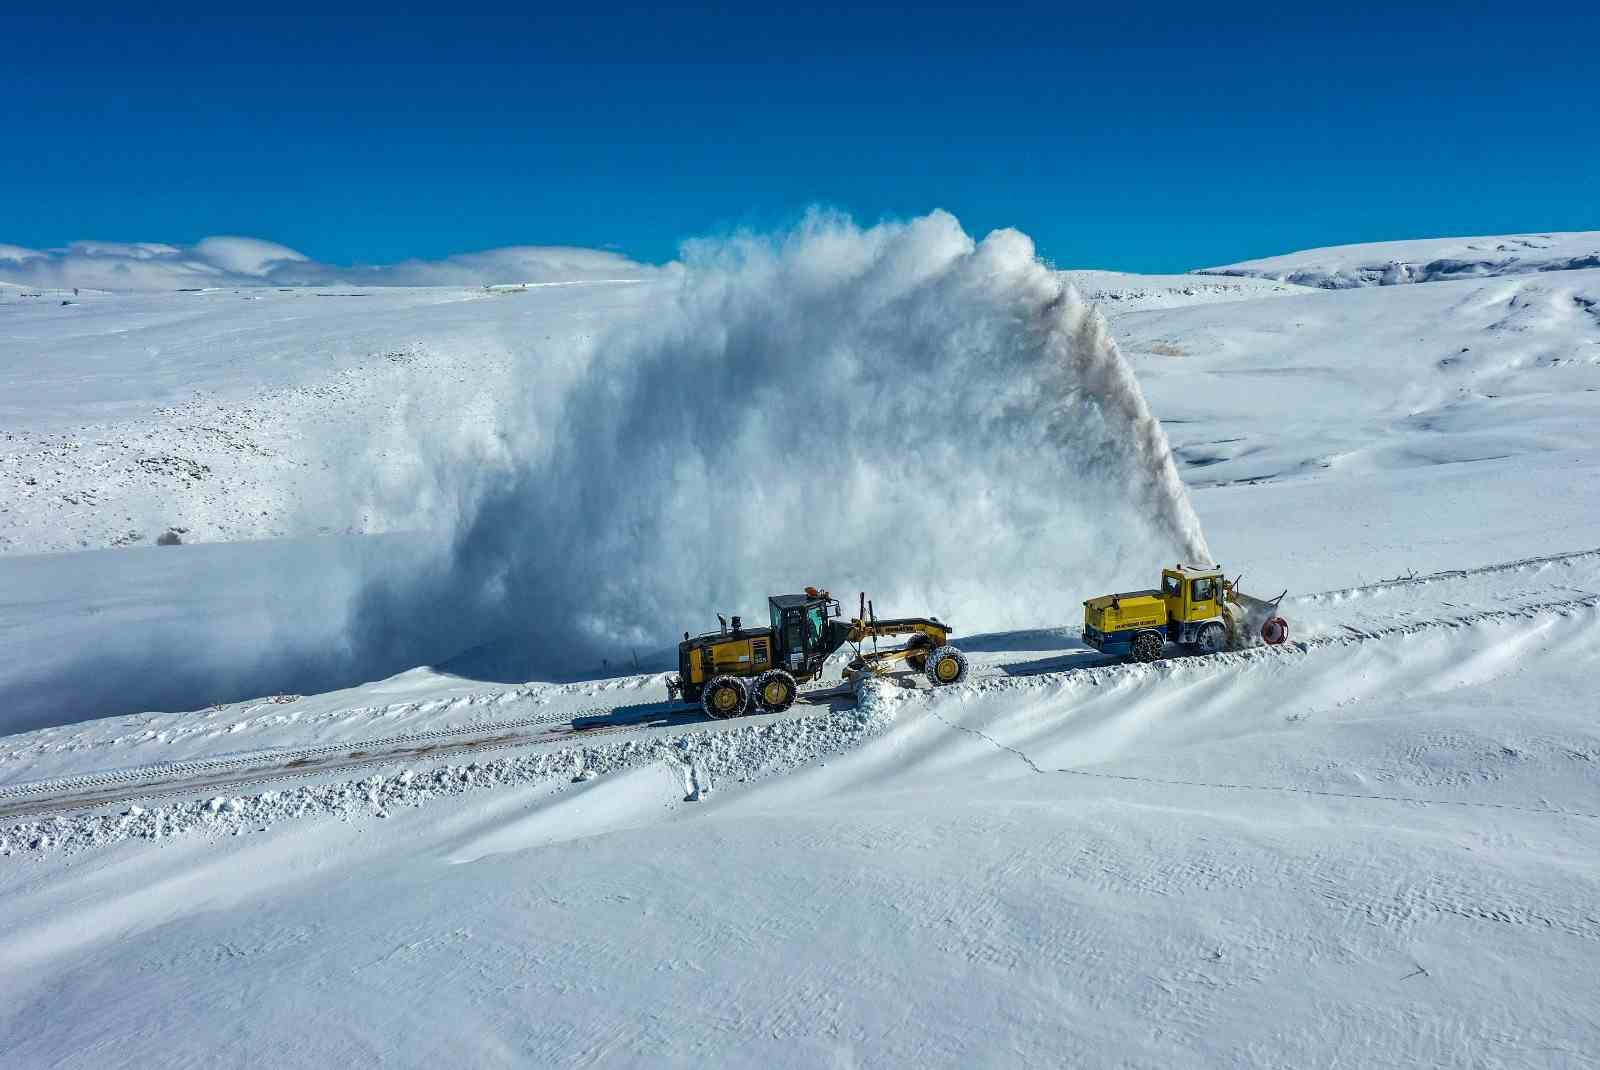 Van Büyükşehir Belediyesinden Süphan Dağı eteklerinde zorlu kar mesaisi